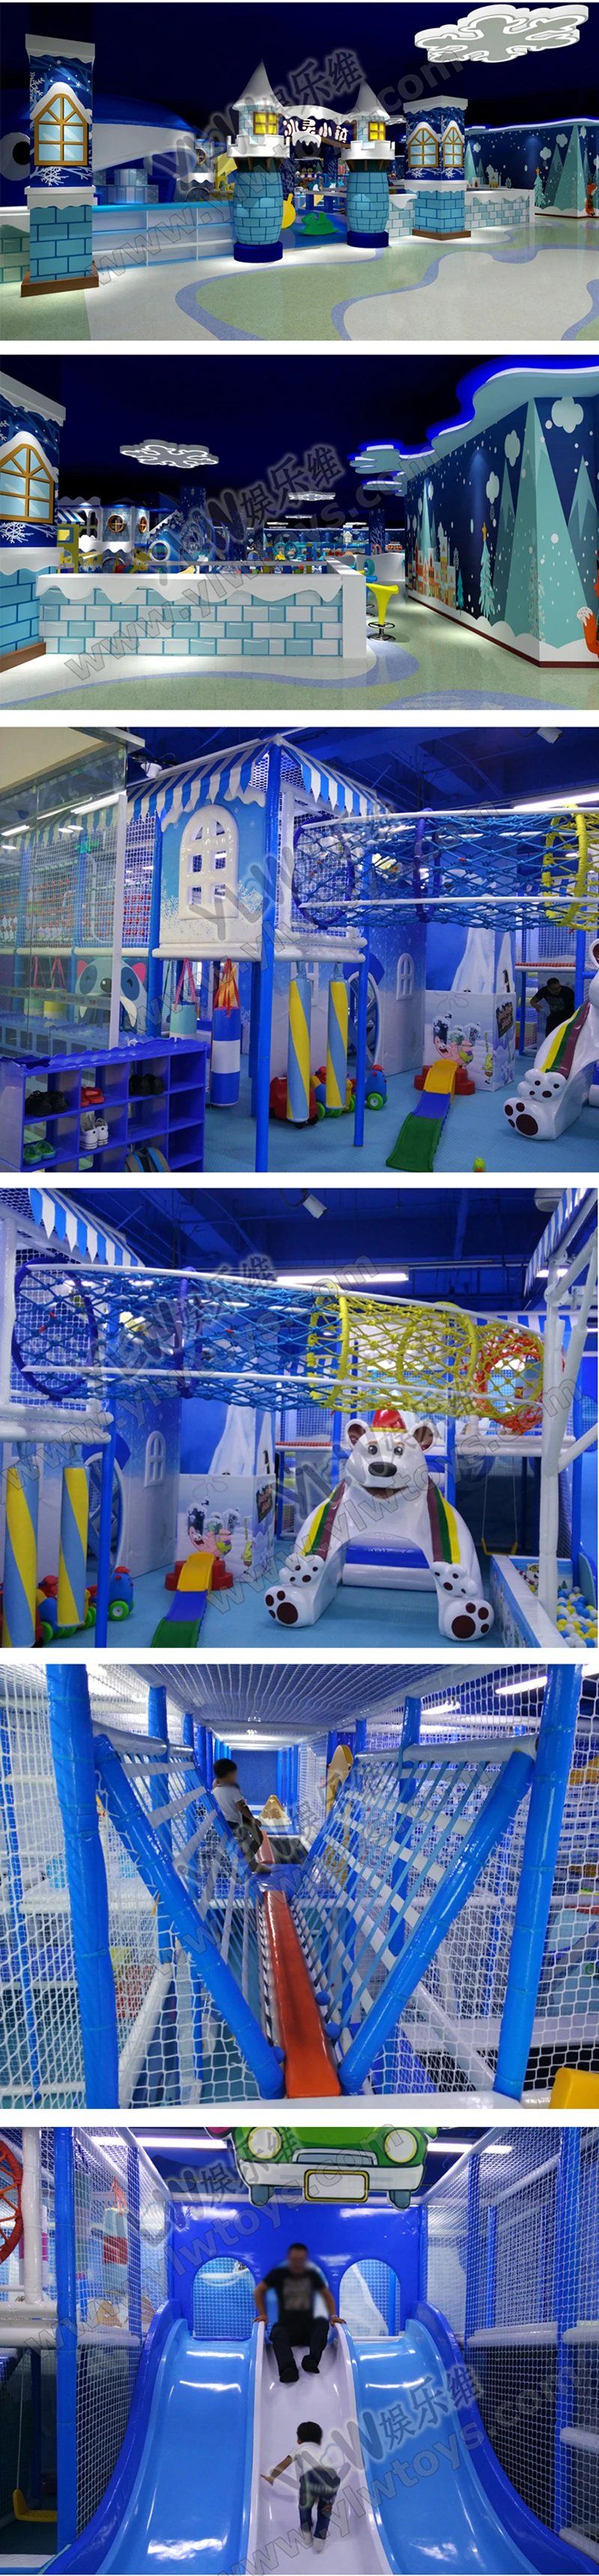 CE, TUV сертифицированный дети развлечений слайд мяч бассейн крытый конструкция детской площадки коммерческих Крытый мягкий игровой дом